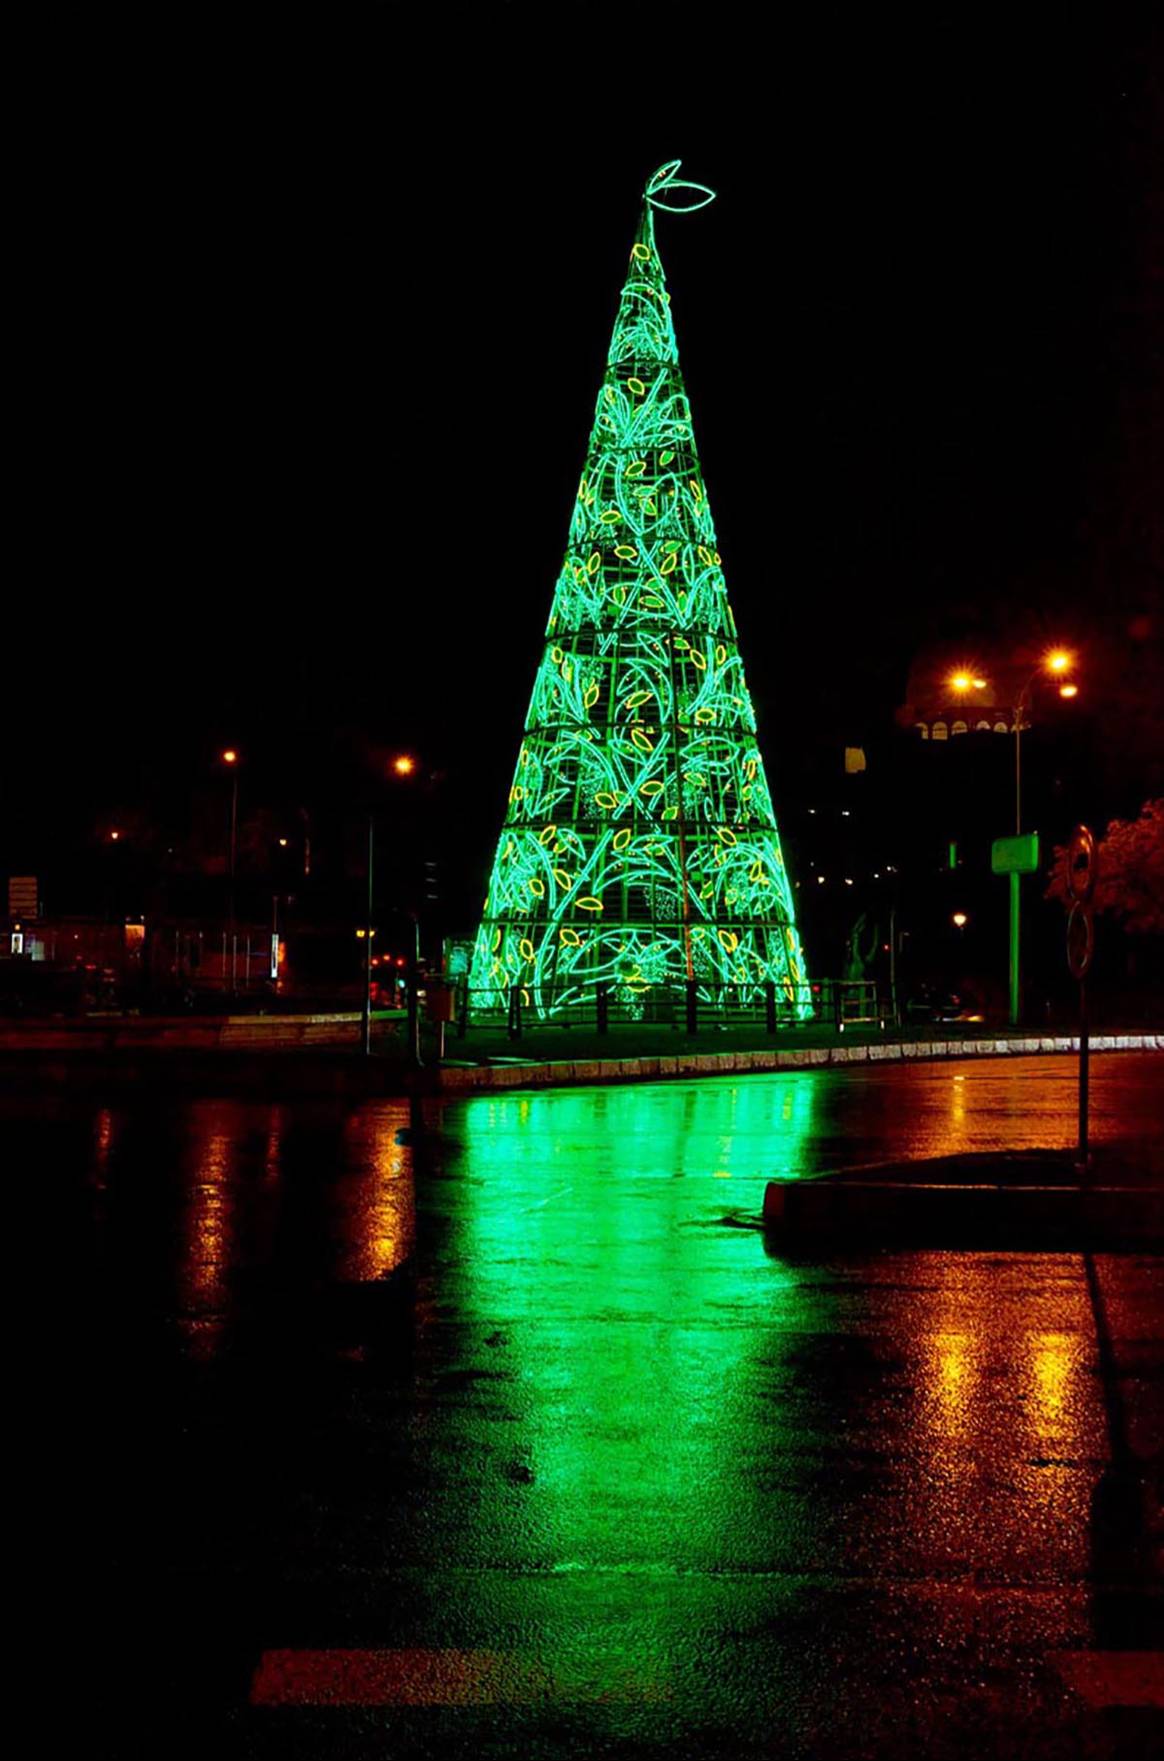 Photo Credits: Árbol de Navidad diseñado por Helena Rohner en el marco de la colaboración establecida con Acme para el diseño del alumbrado navideño de Madrid. Fotografía de cortesía.